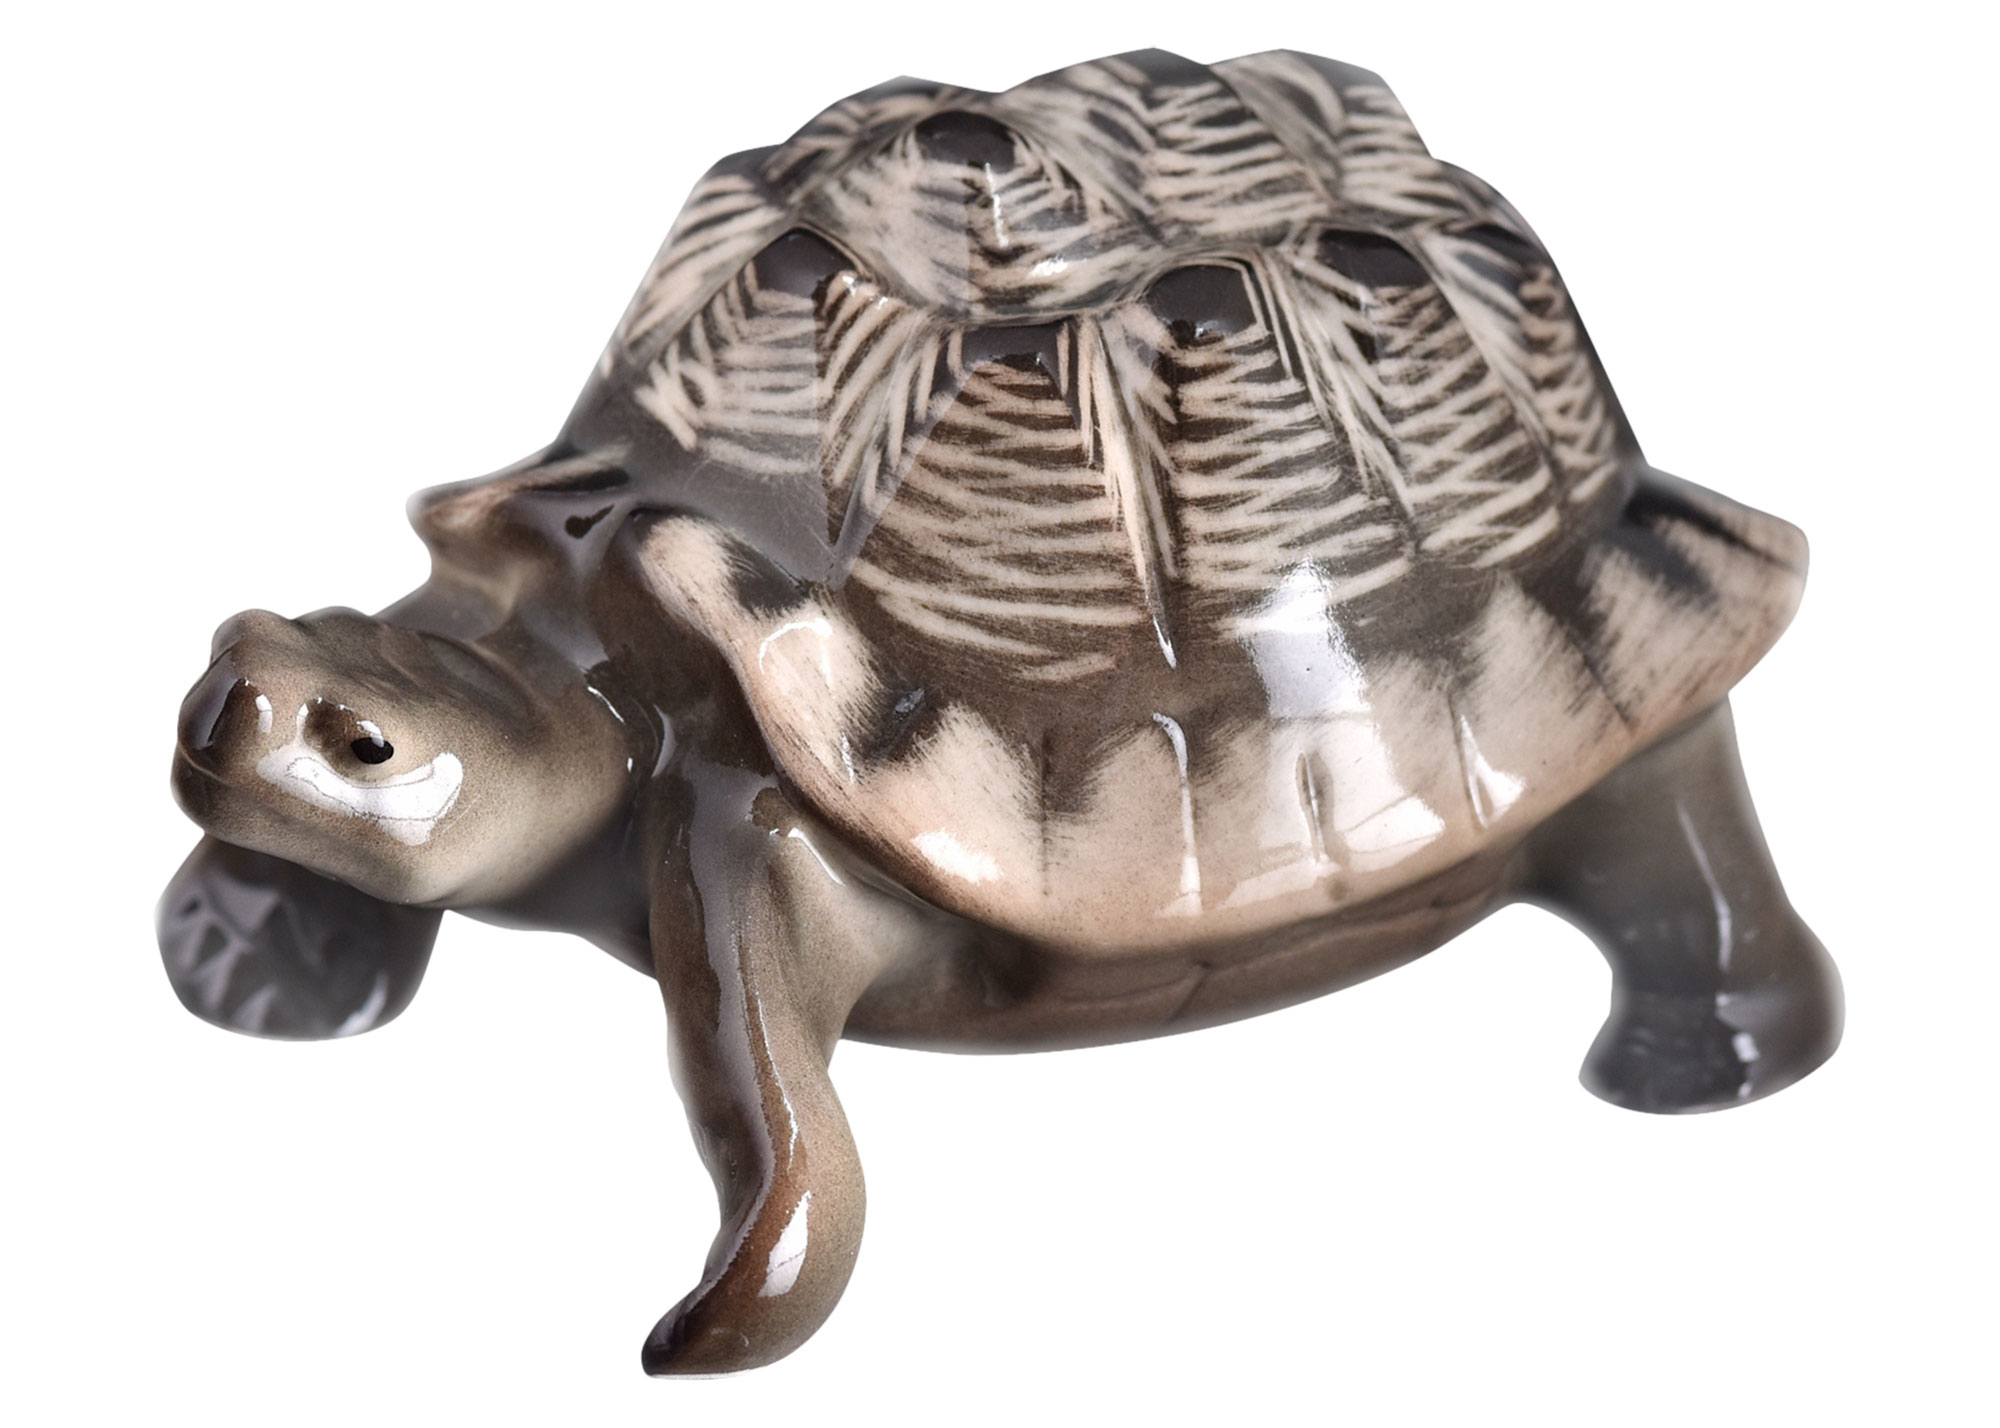 Buy Porcelain Land Turtle Figurine  at GoldenCockerel.com